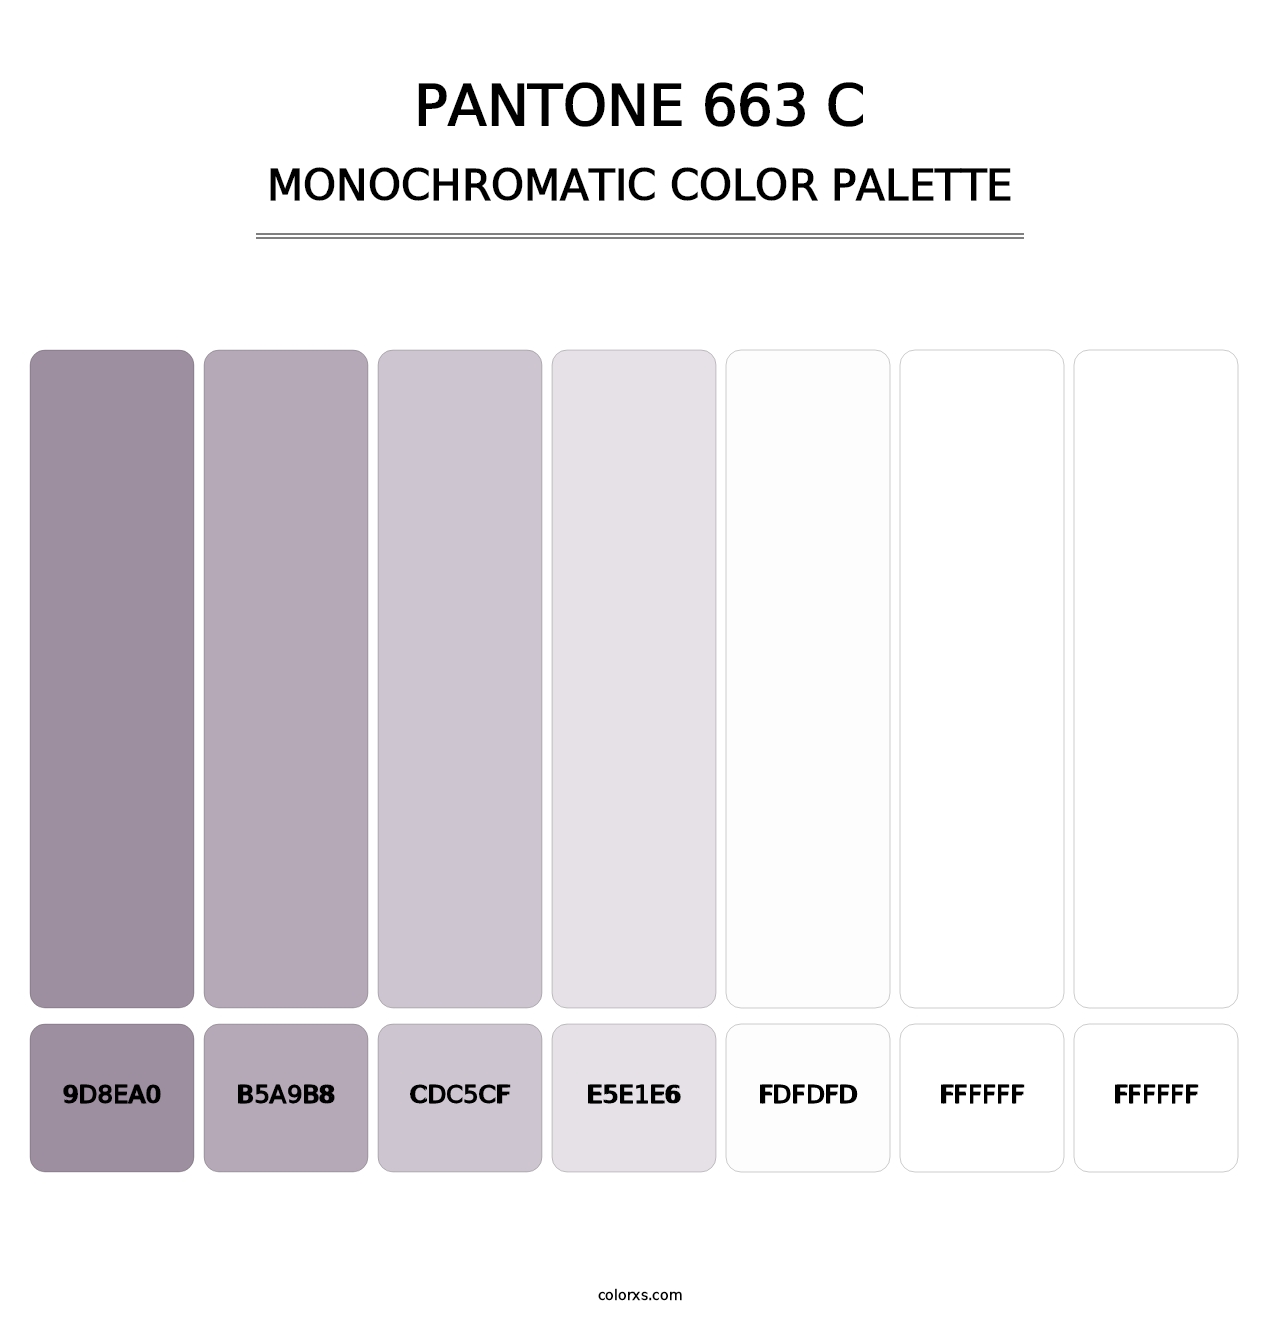 PANTONE 663 C - Monochromatic Color Palette